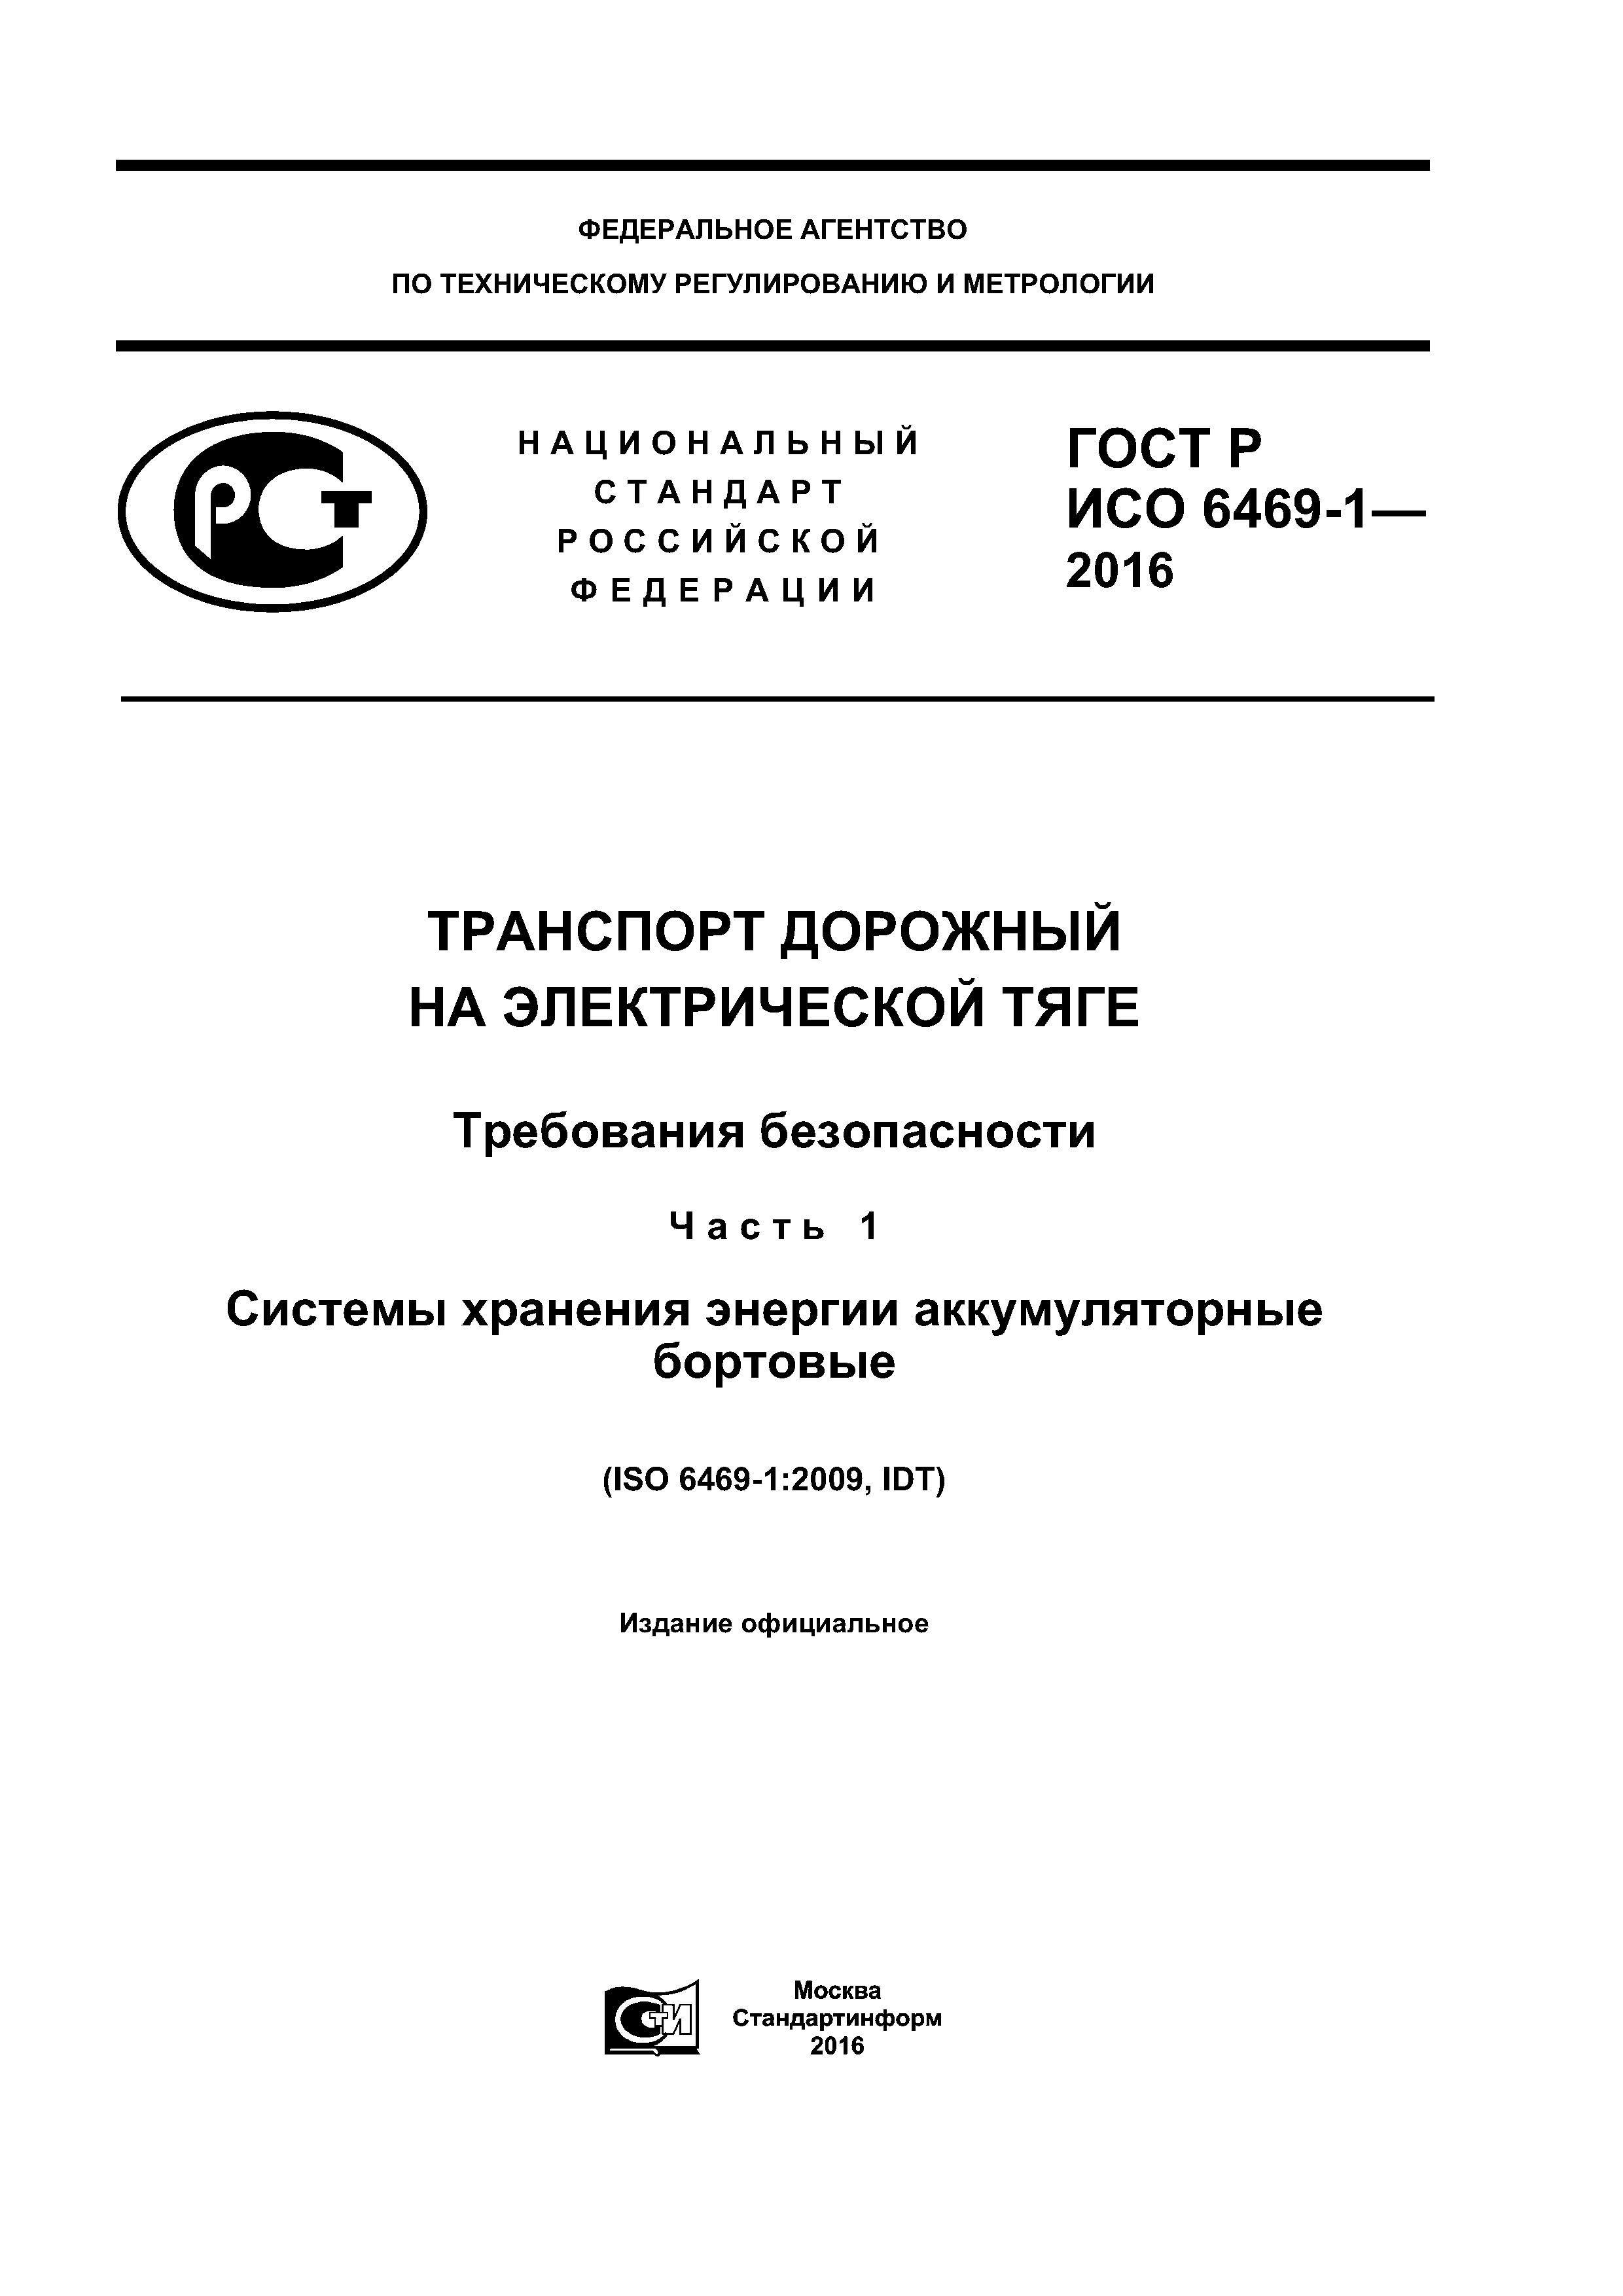 ГОСТ Р ИСО 6469-1-2016